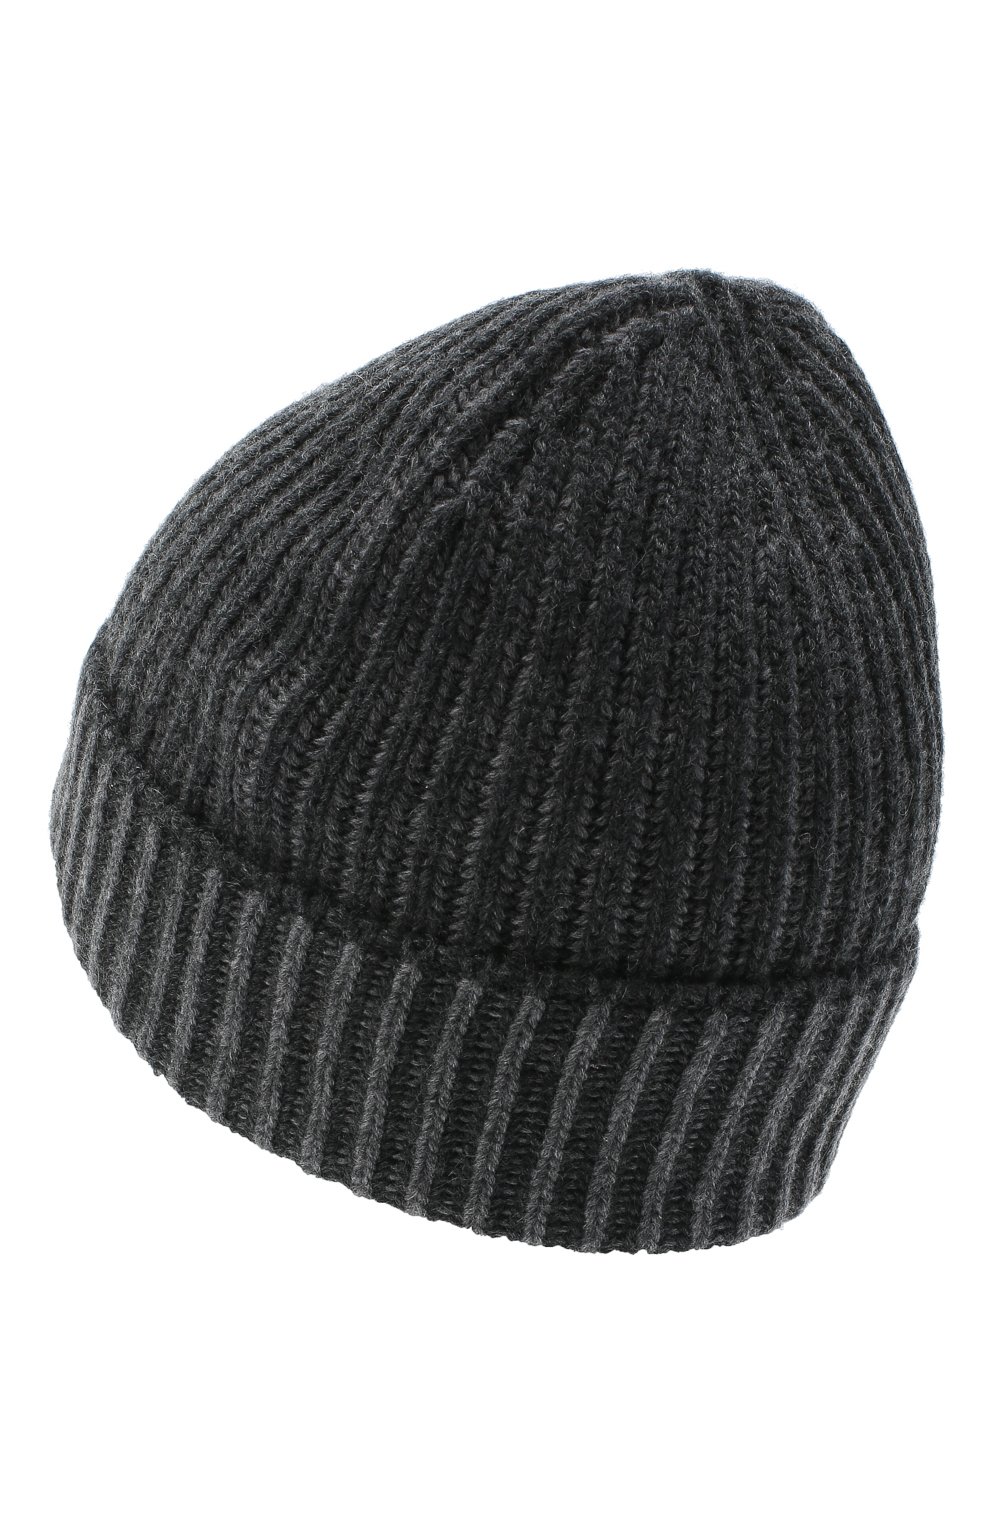 Женская кашемировая шапка BURBERRY серого цвета, арт. 8033756 | Фото 2 (Материал: Текстиль, Кашемир, Шерсть)